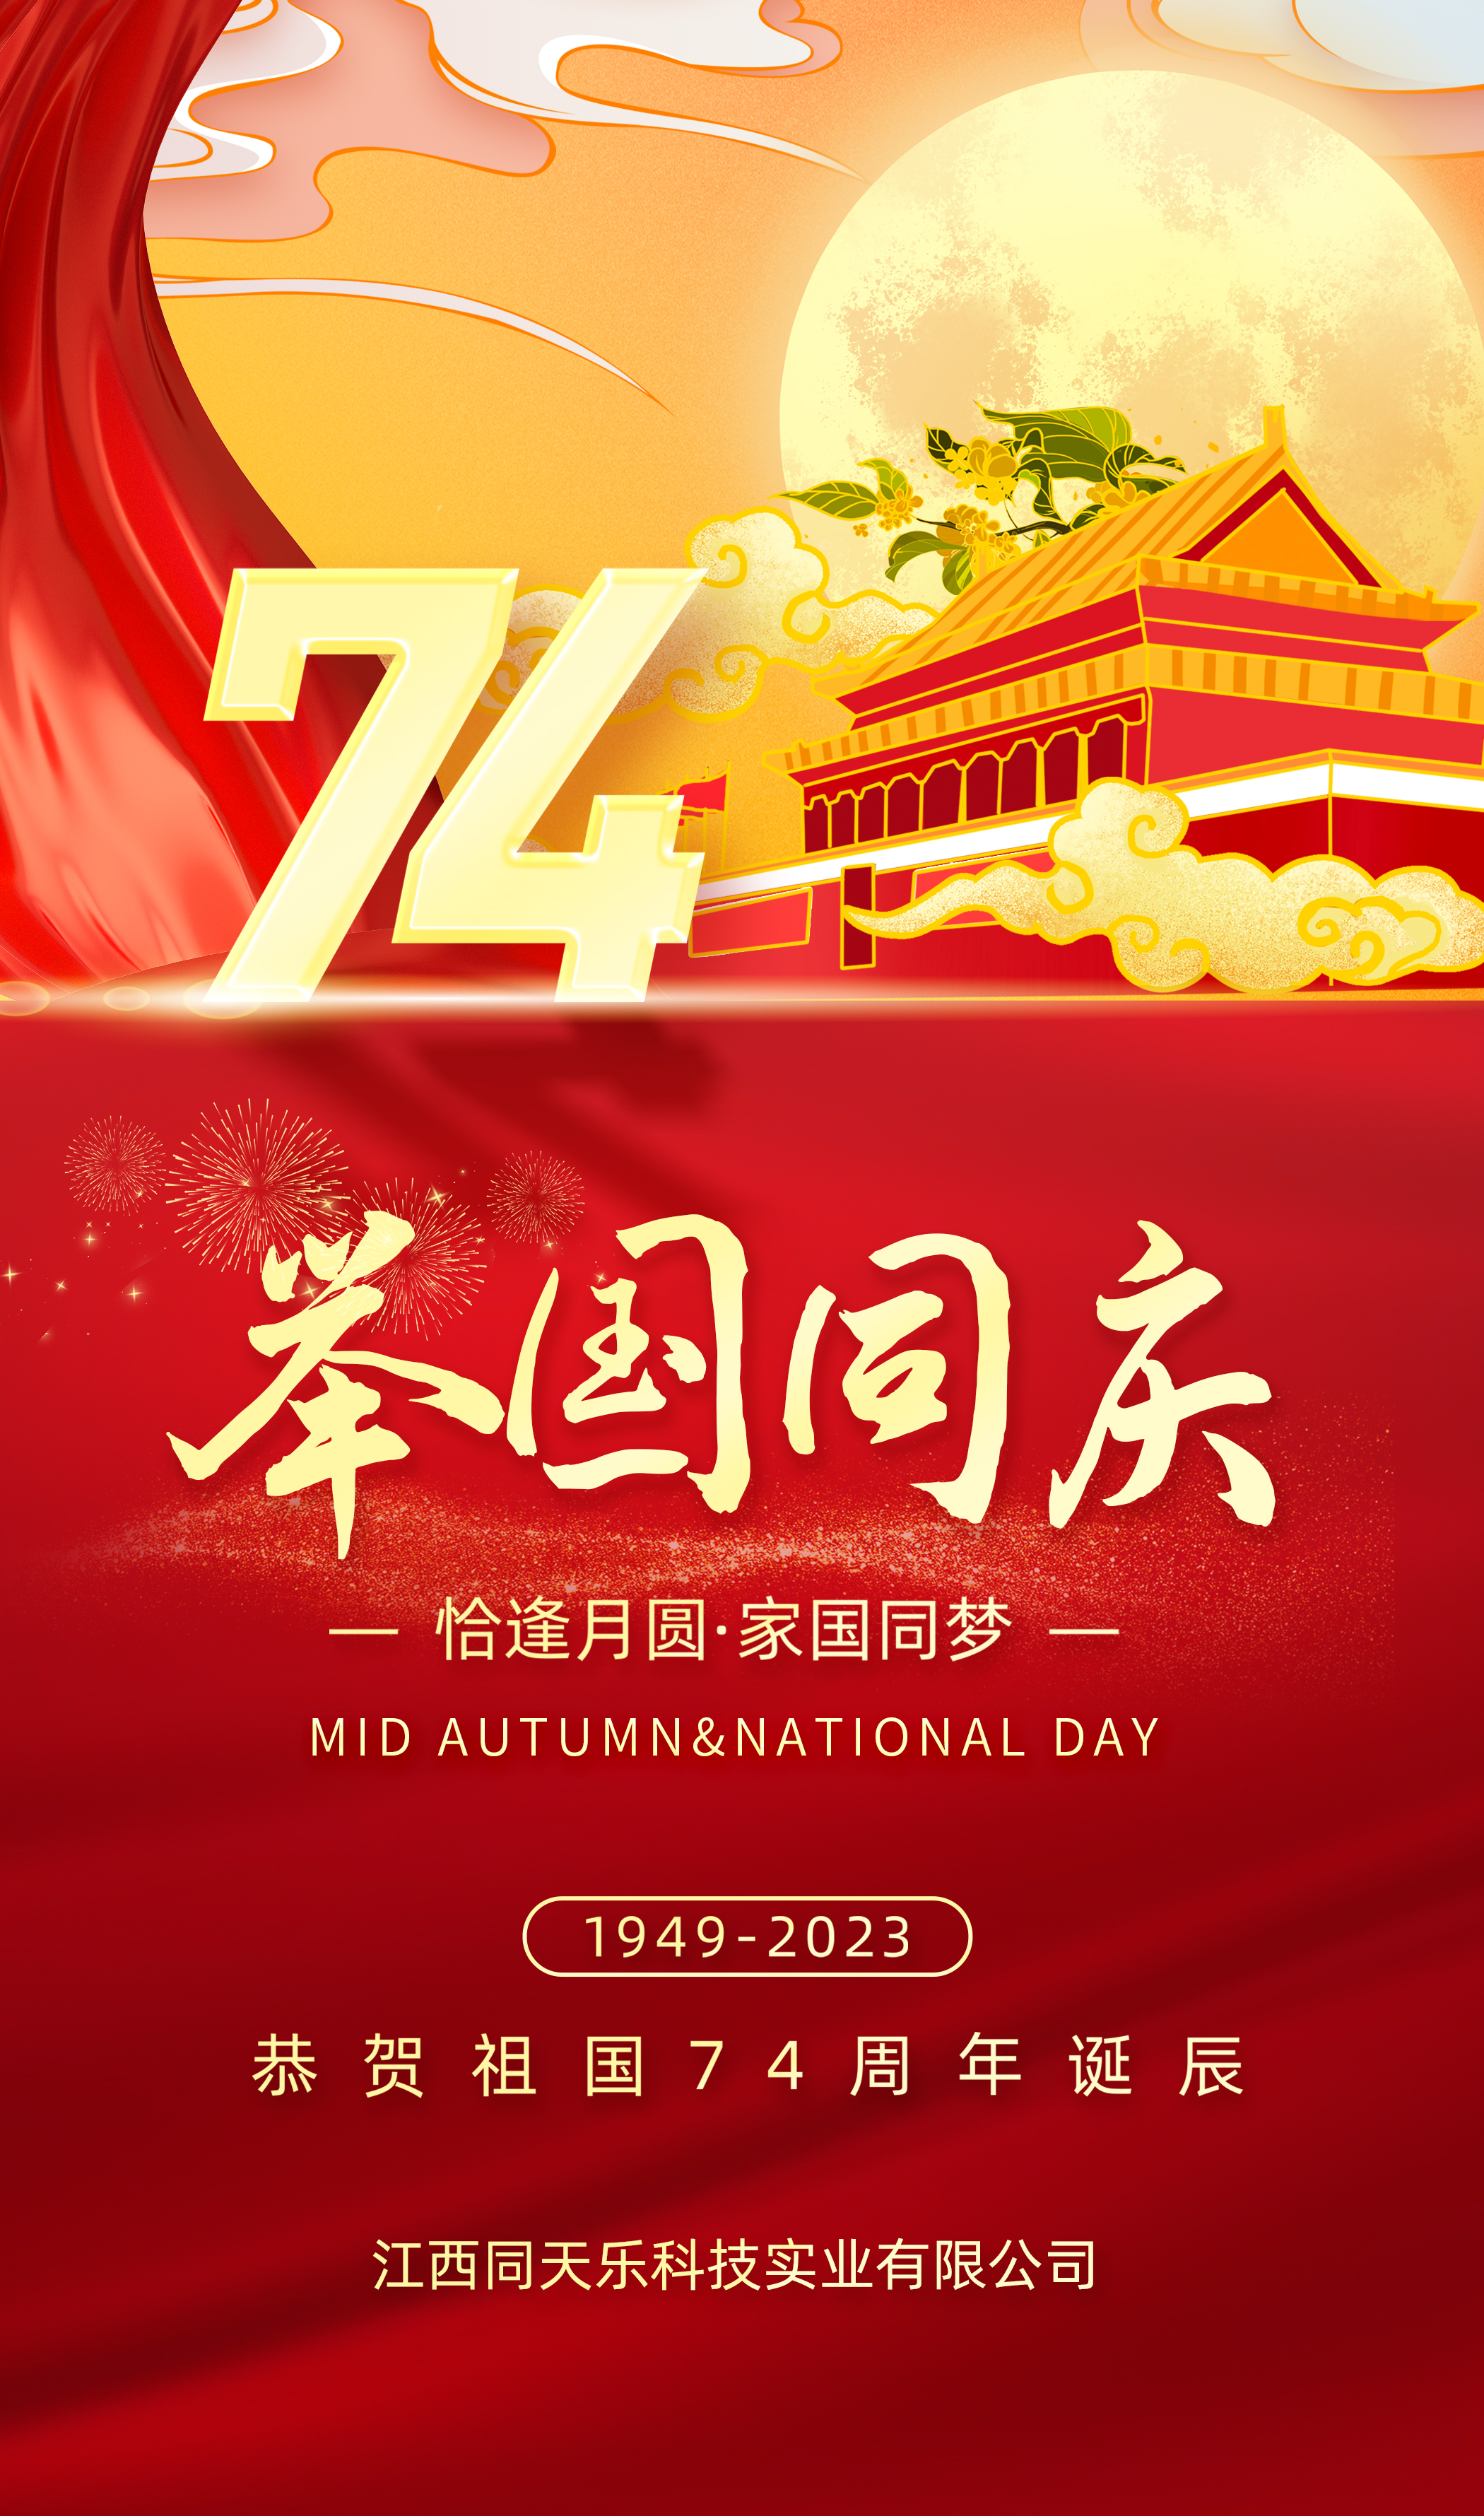 熱烈慶祝中華人民共和國成立第七十四周年!